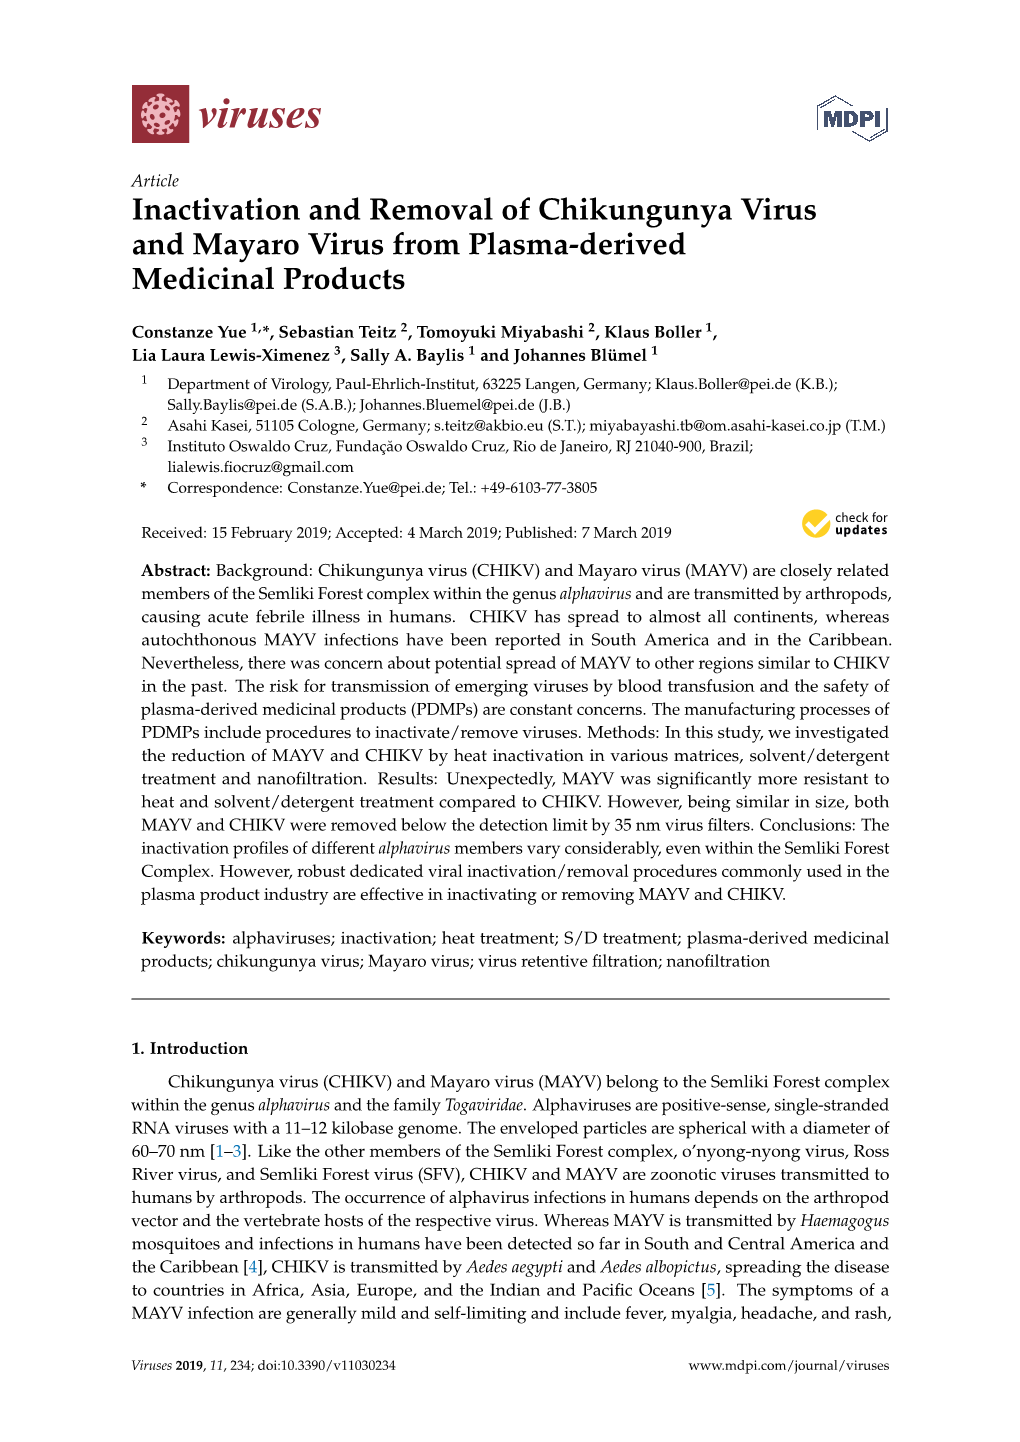 Inactivation and Removal of Chikungunya Virus and Mayaro Virus from Plasma-Derived Medicinal Products